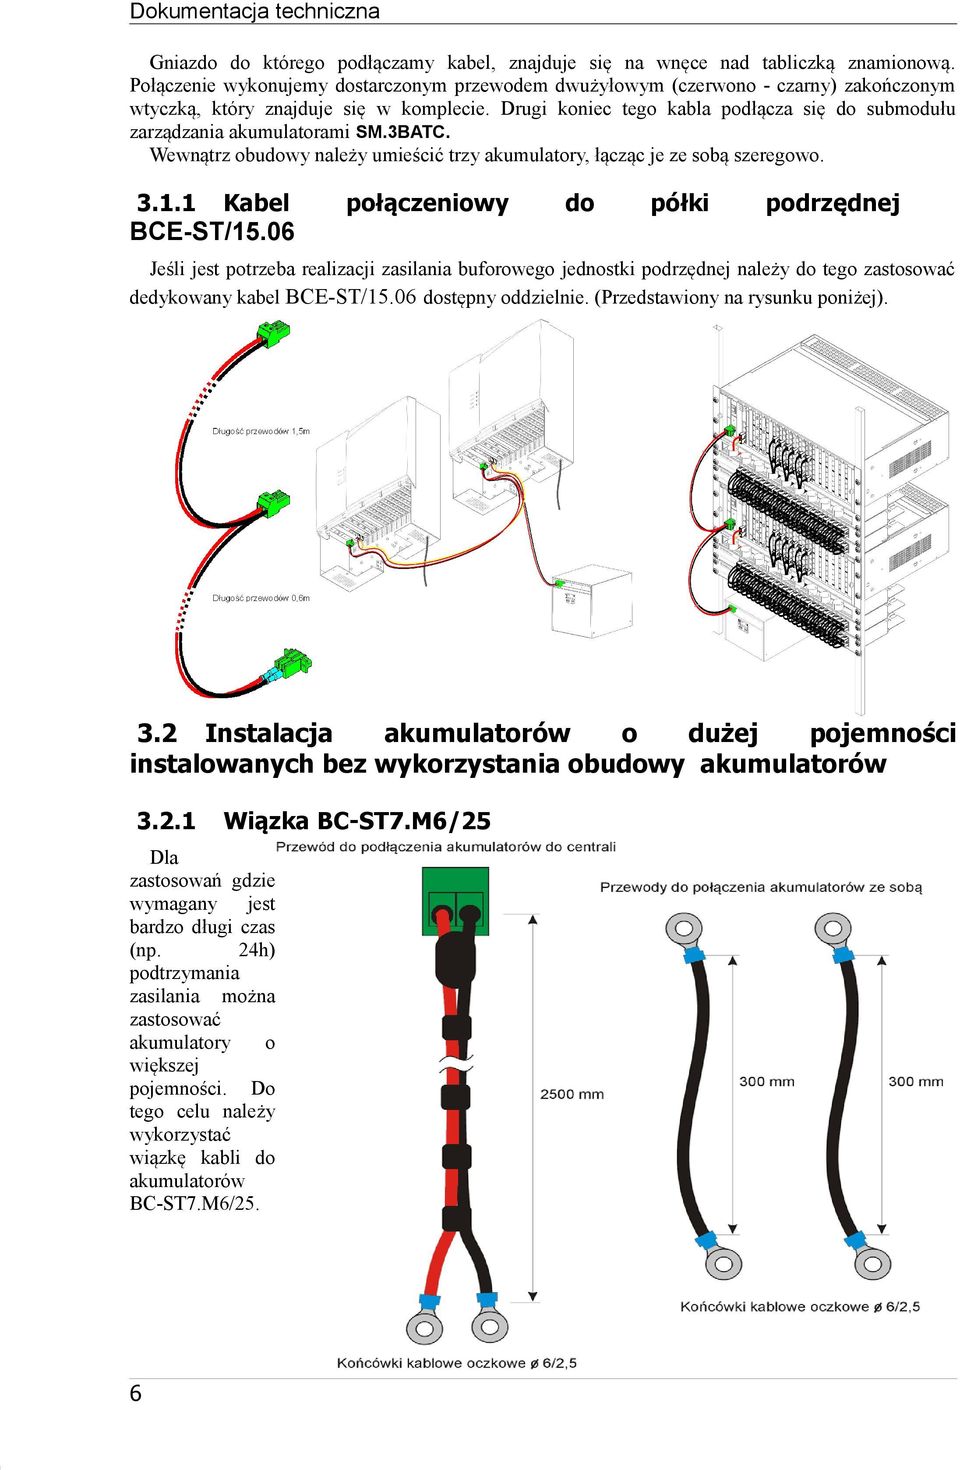 Drugi koniec tego kabla podłącza się do submodułu zarządzania akumulatorami SM.3BATC. Wewnątrz obudowy należy umieścić trzy akumulatory, łącząc je ze sobą szeregowo. 3.1.